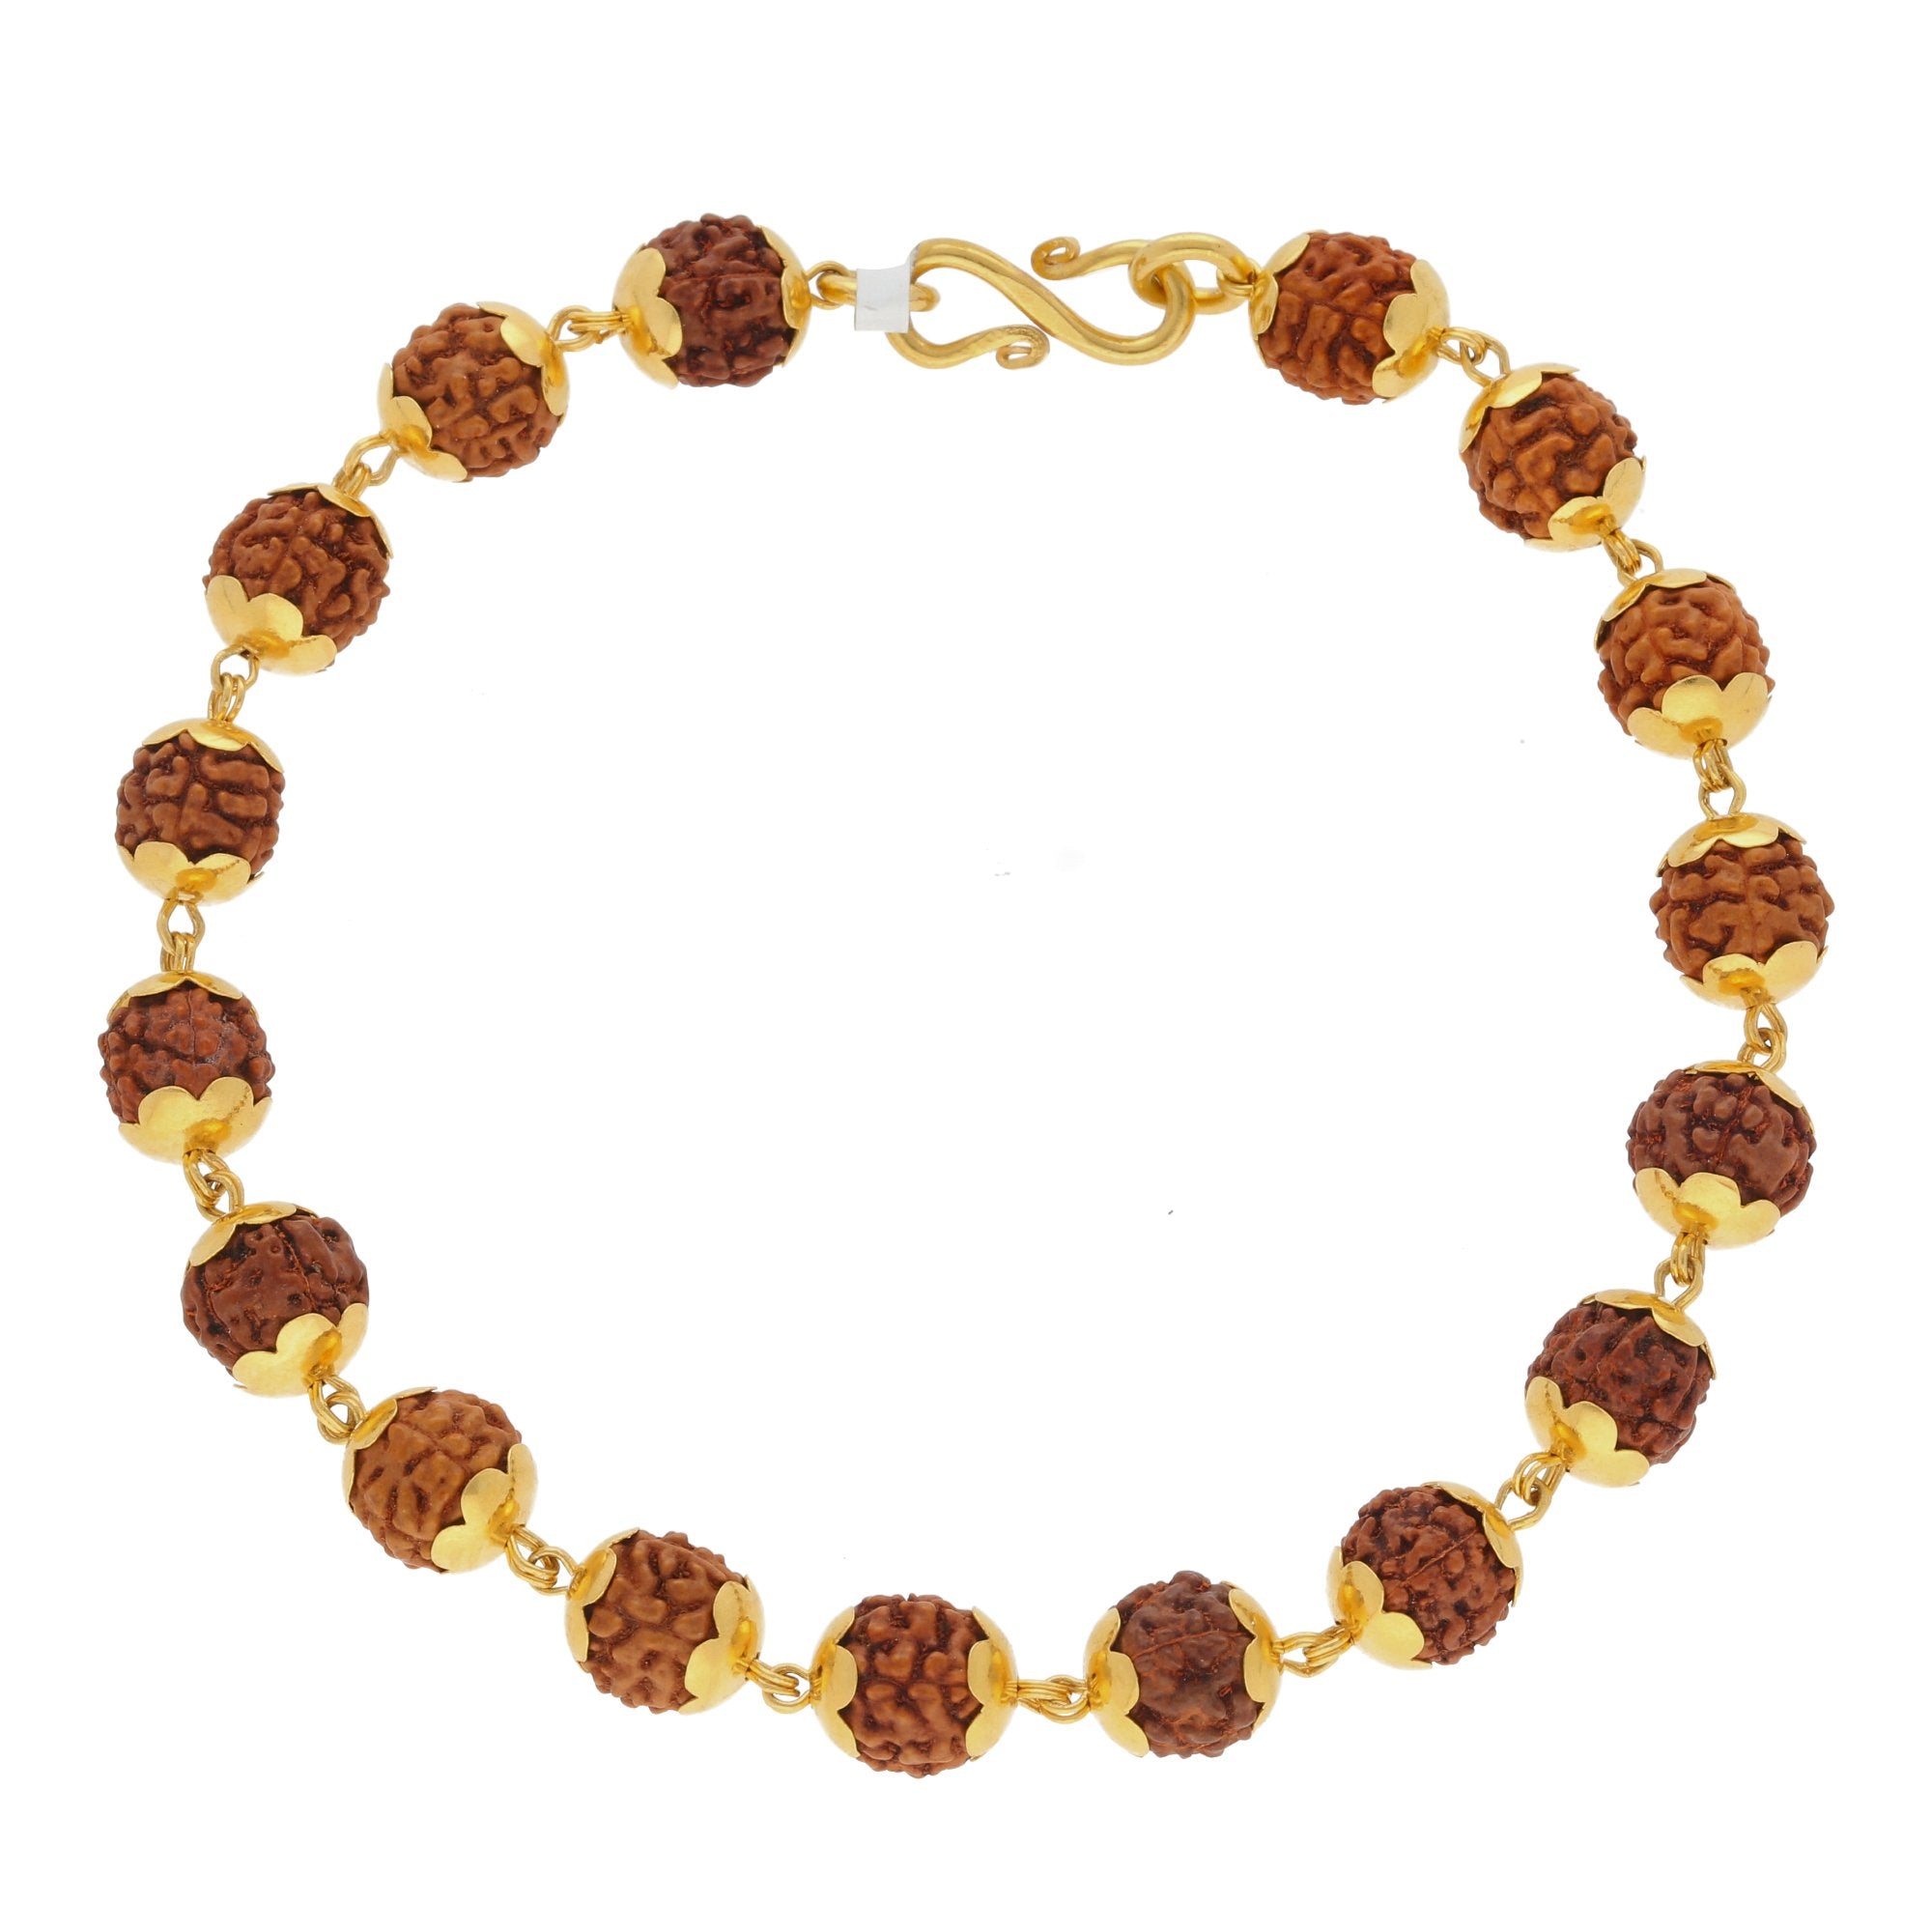 Vishesh jewels 18k And 22k Men Gold Bracelets, 40 Grams at Rs 225000 in New  Delhi